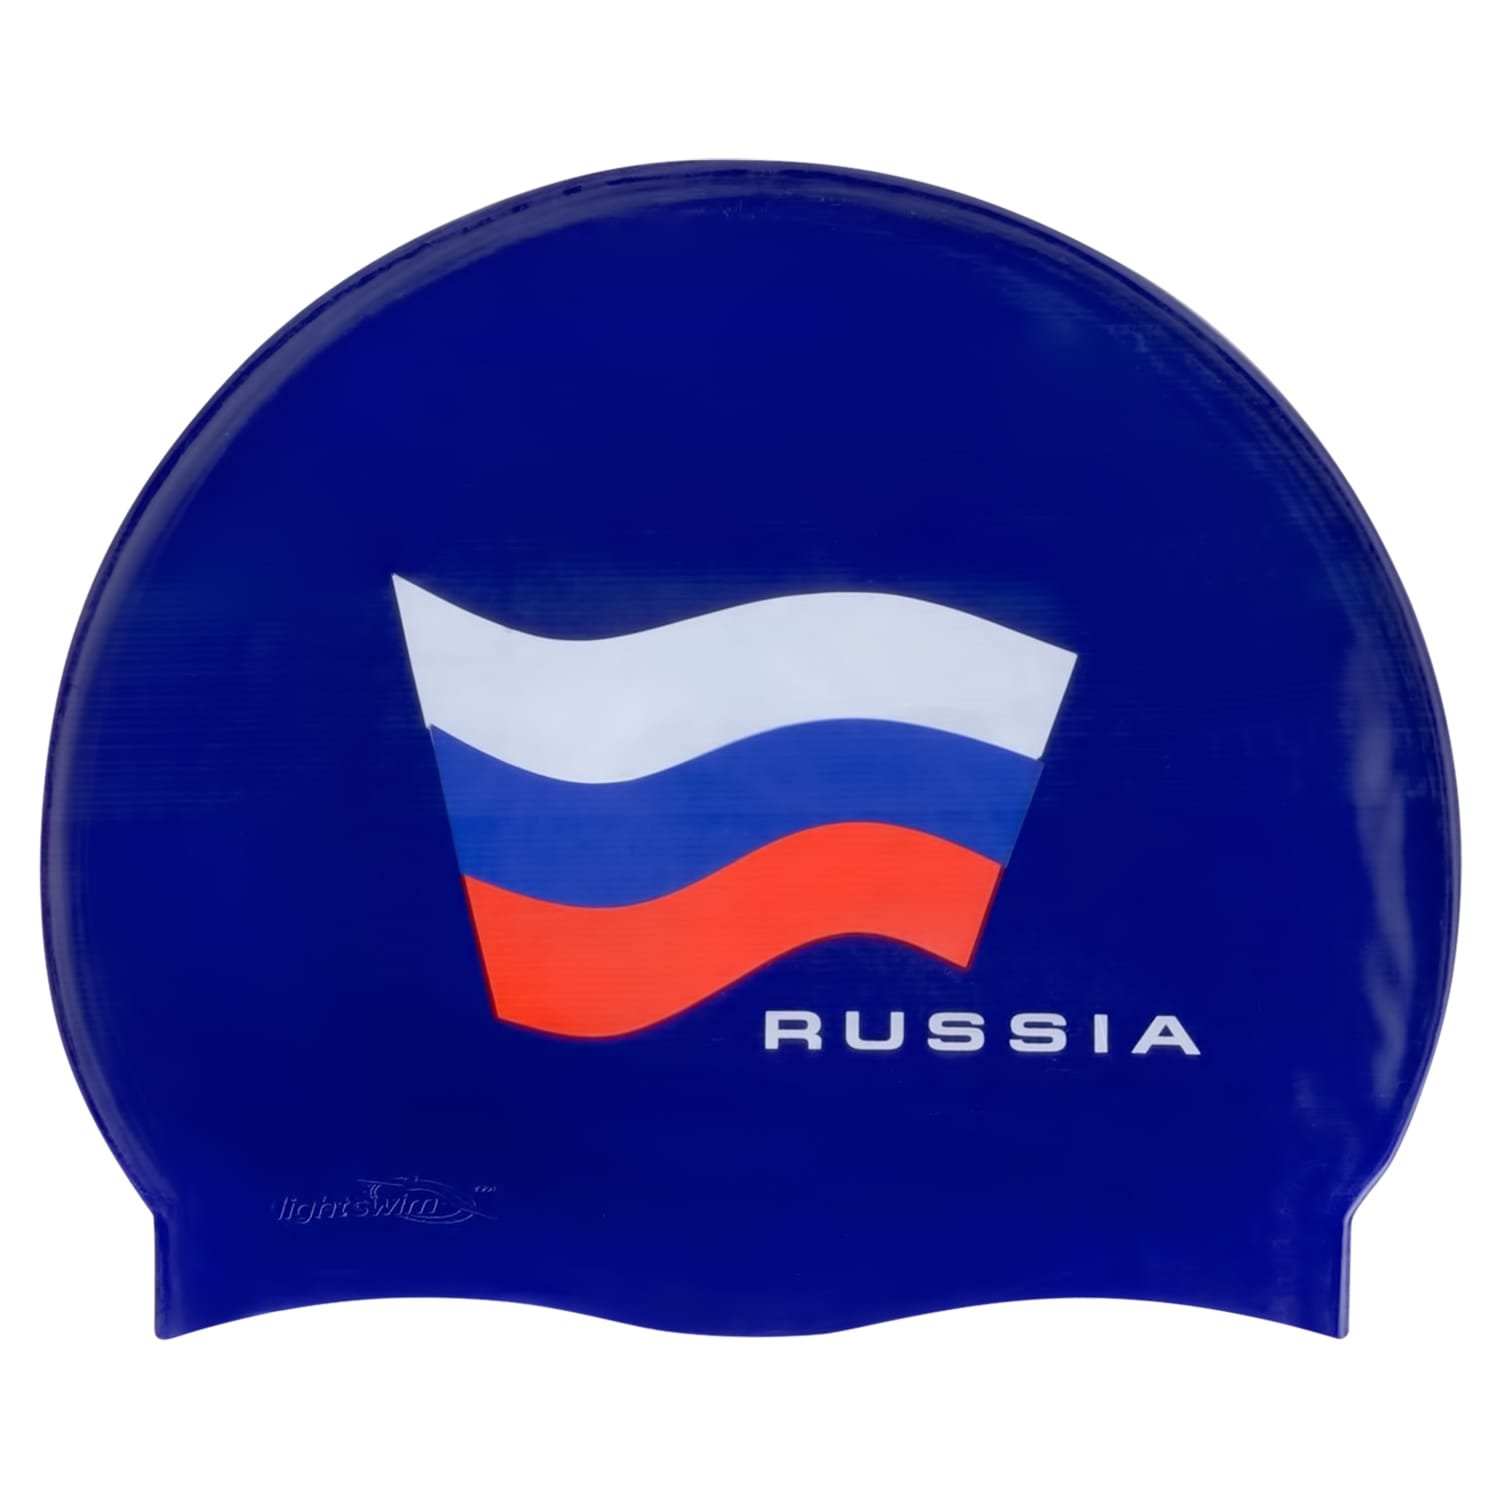 Шапочки для бассейна С/LS8 (RUSSIA)